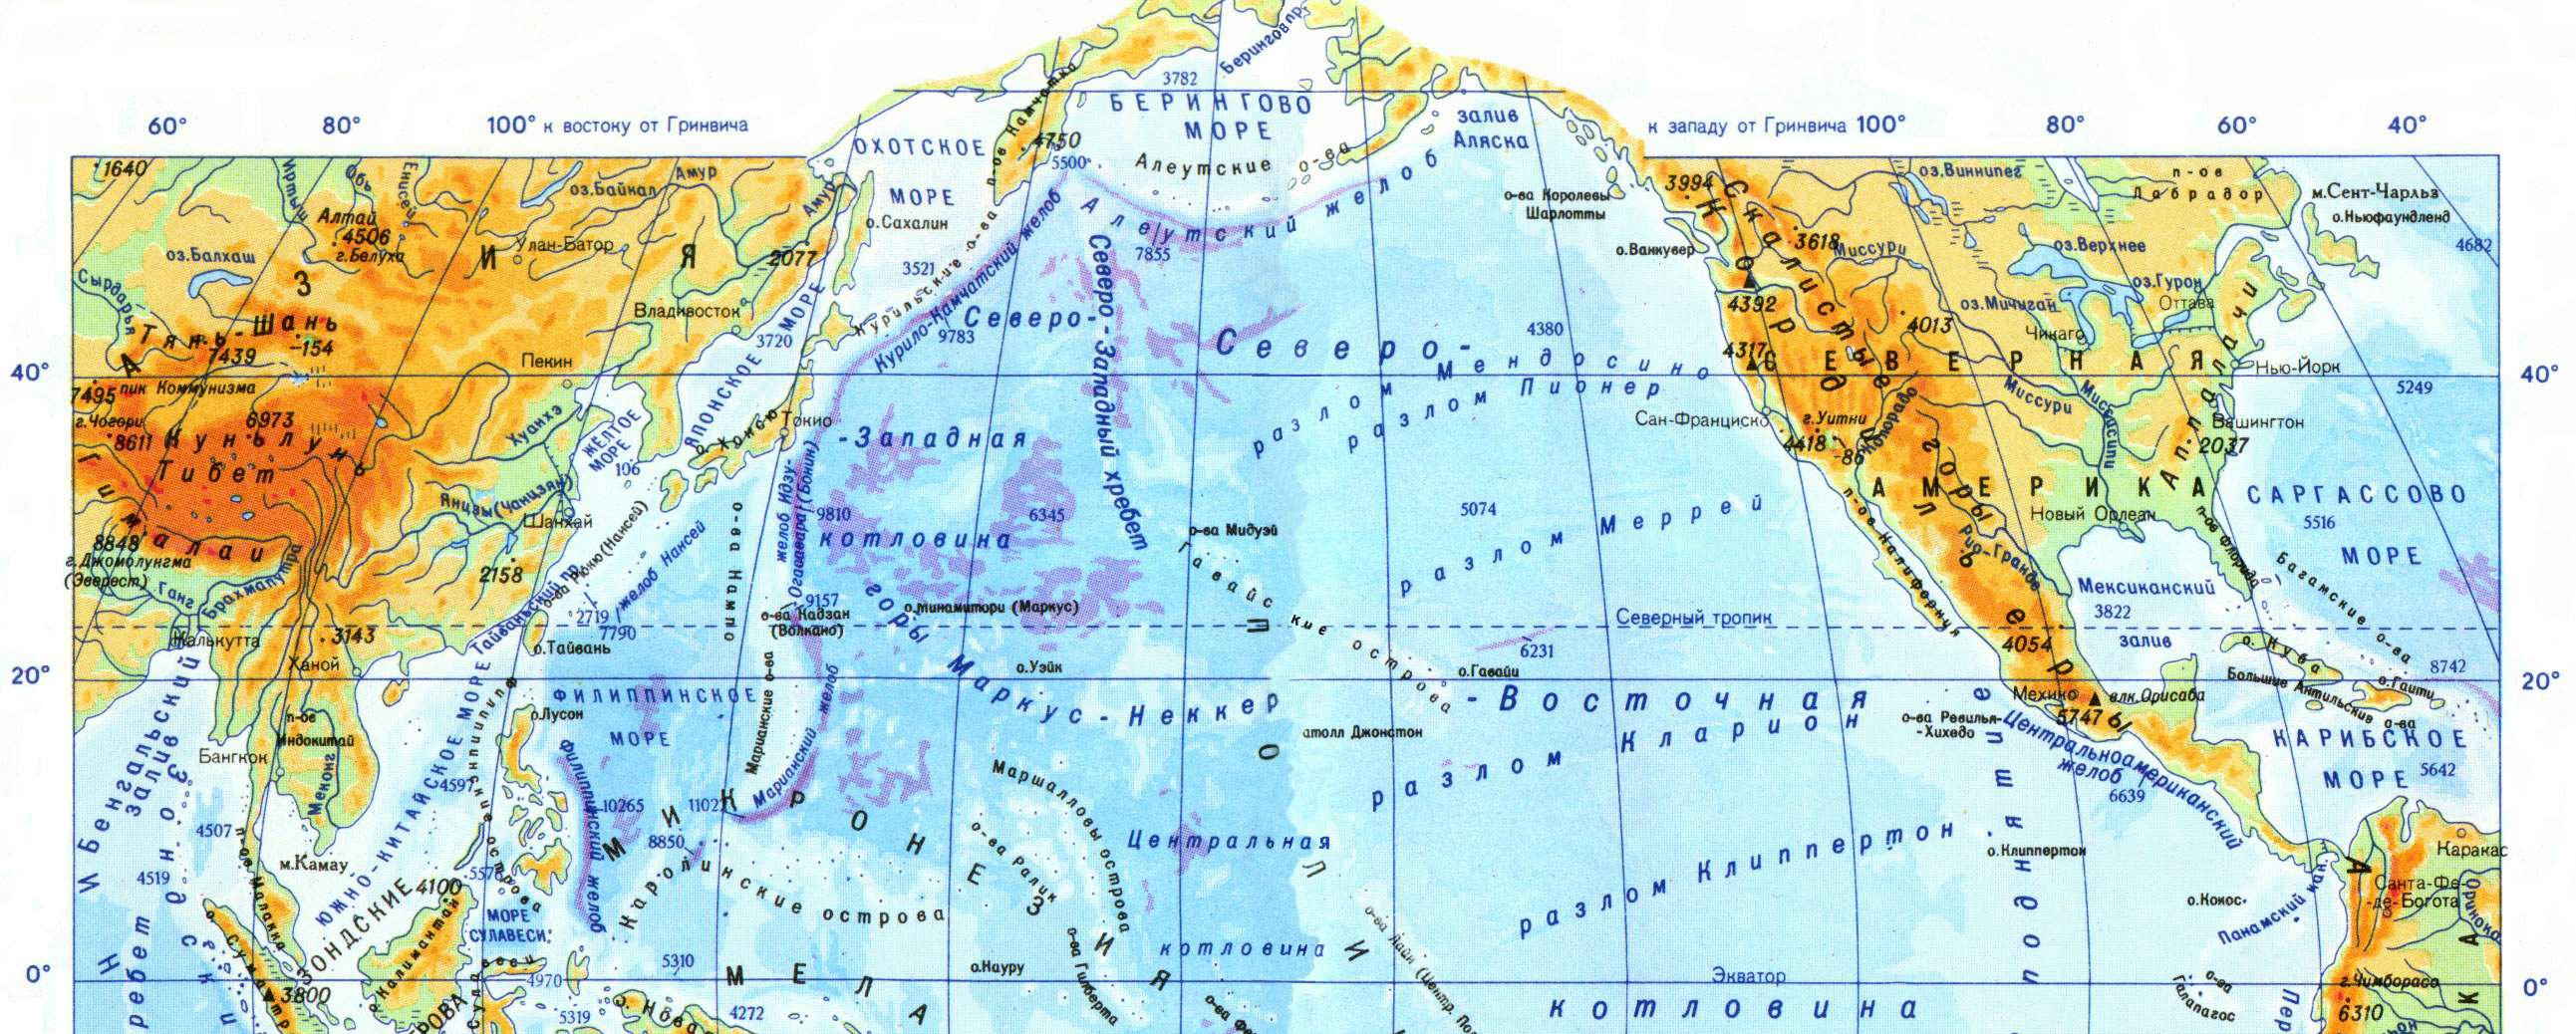 Все заливы. Карта Азии с морями проливами и заливами. Зарубежная Азия моря заливы проливы. Моря заливы проливы Евразии. Проливы и заливы зарубежной Азии.